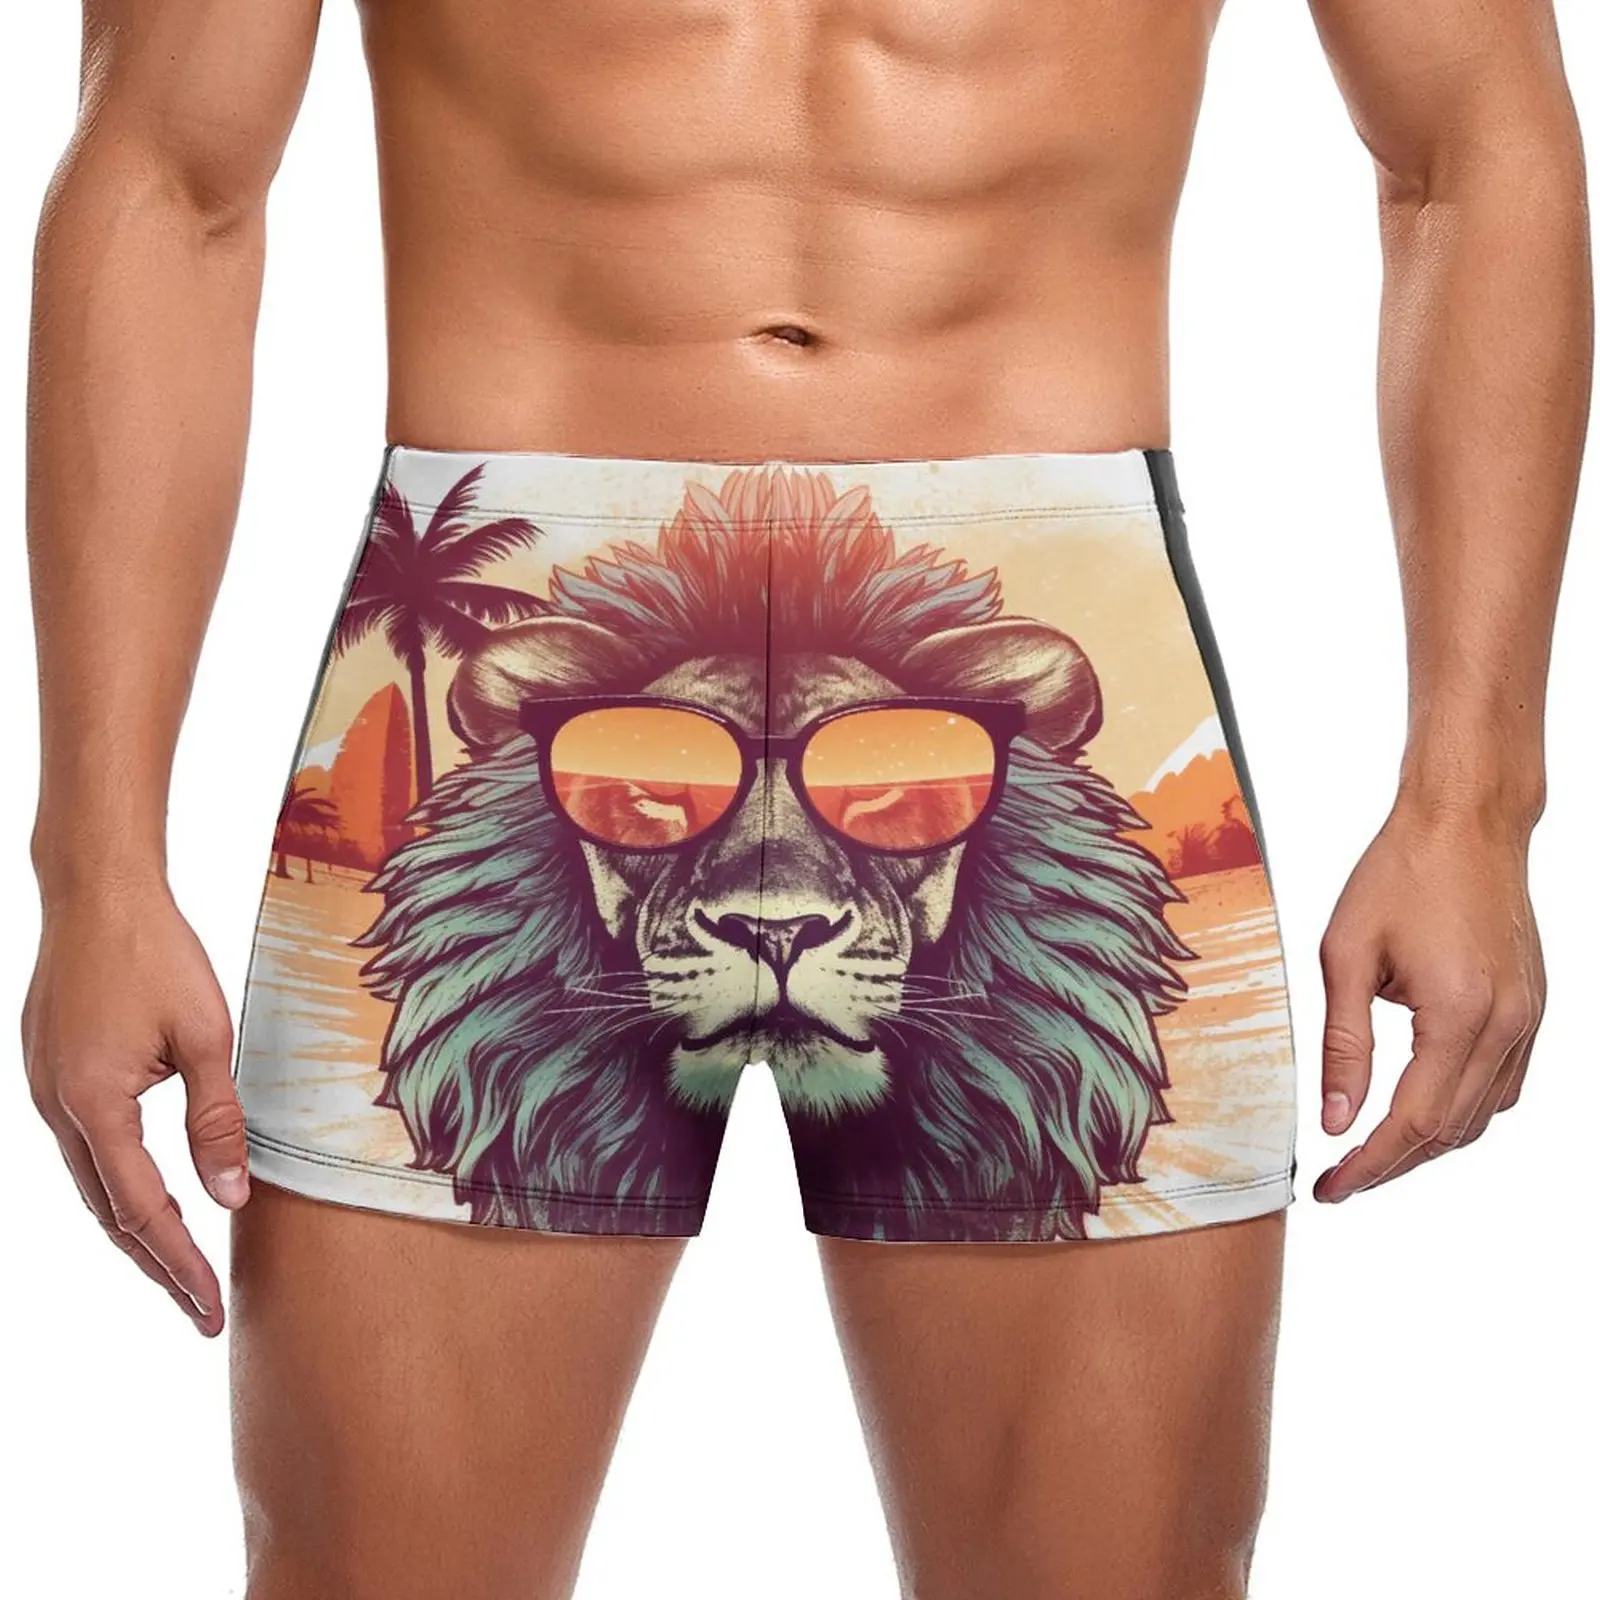 

Плавательные плавки с изображением Льва, солнцезащитные очки с изображением животных, закат, трендовые плавки в стиле ретро для бассейна, мужской купальник пуш-ап